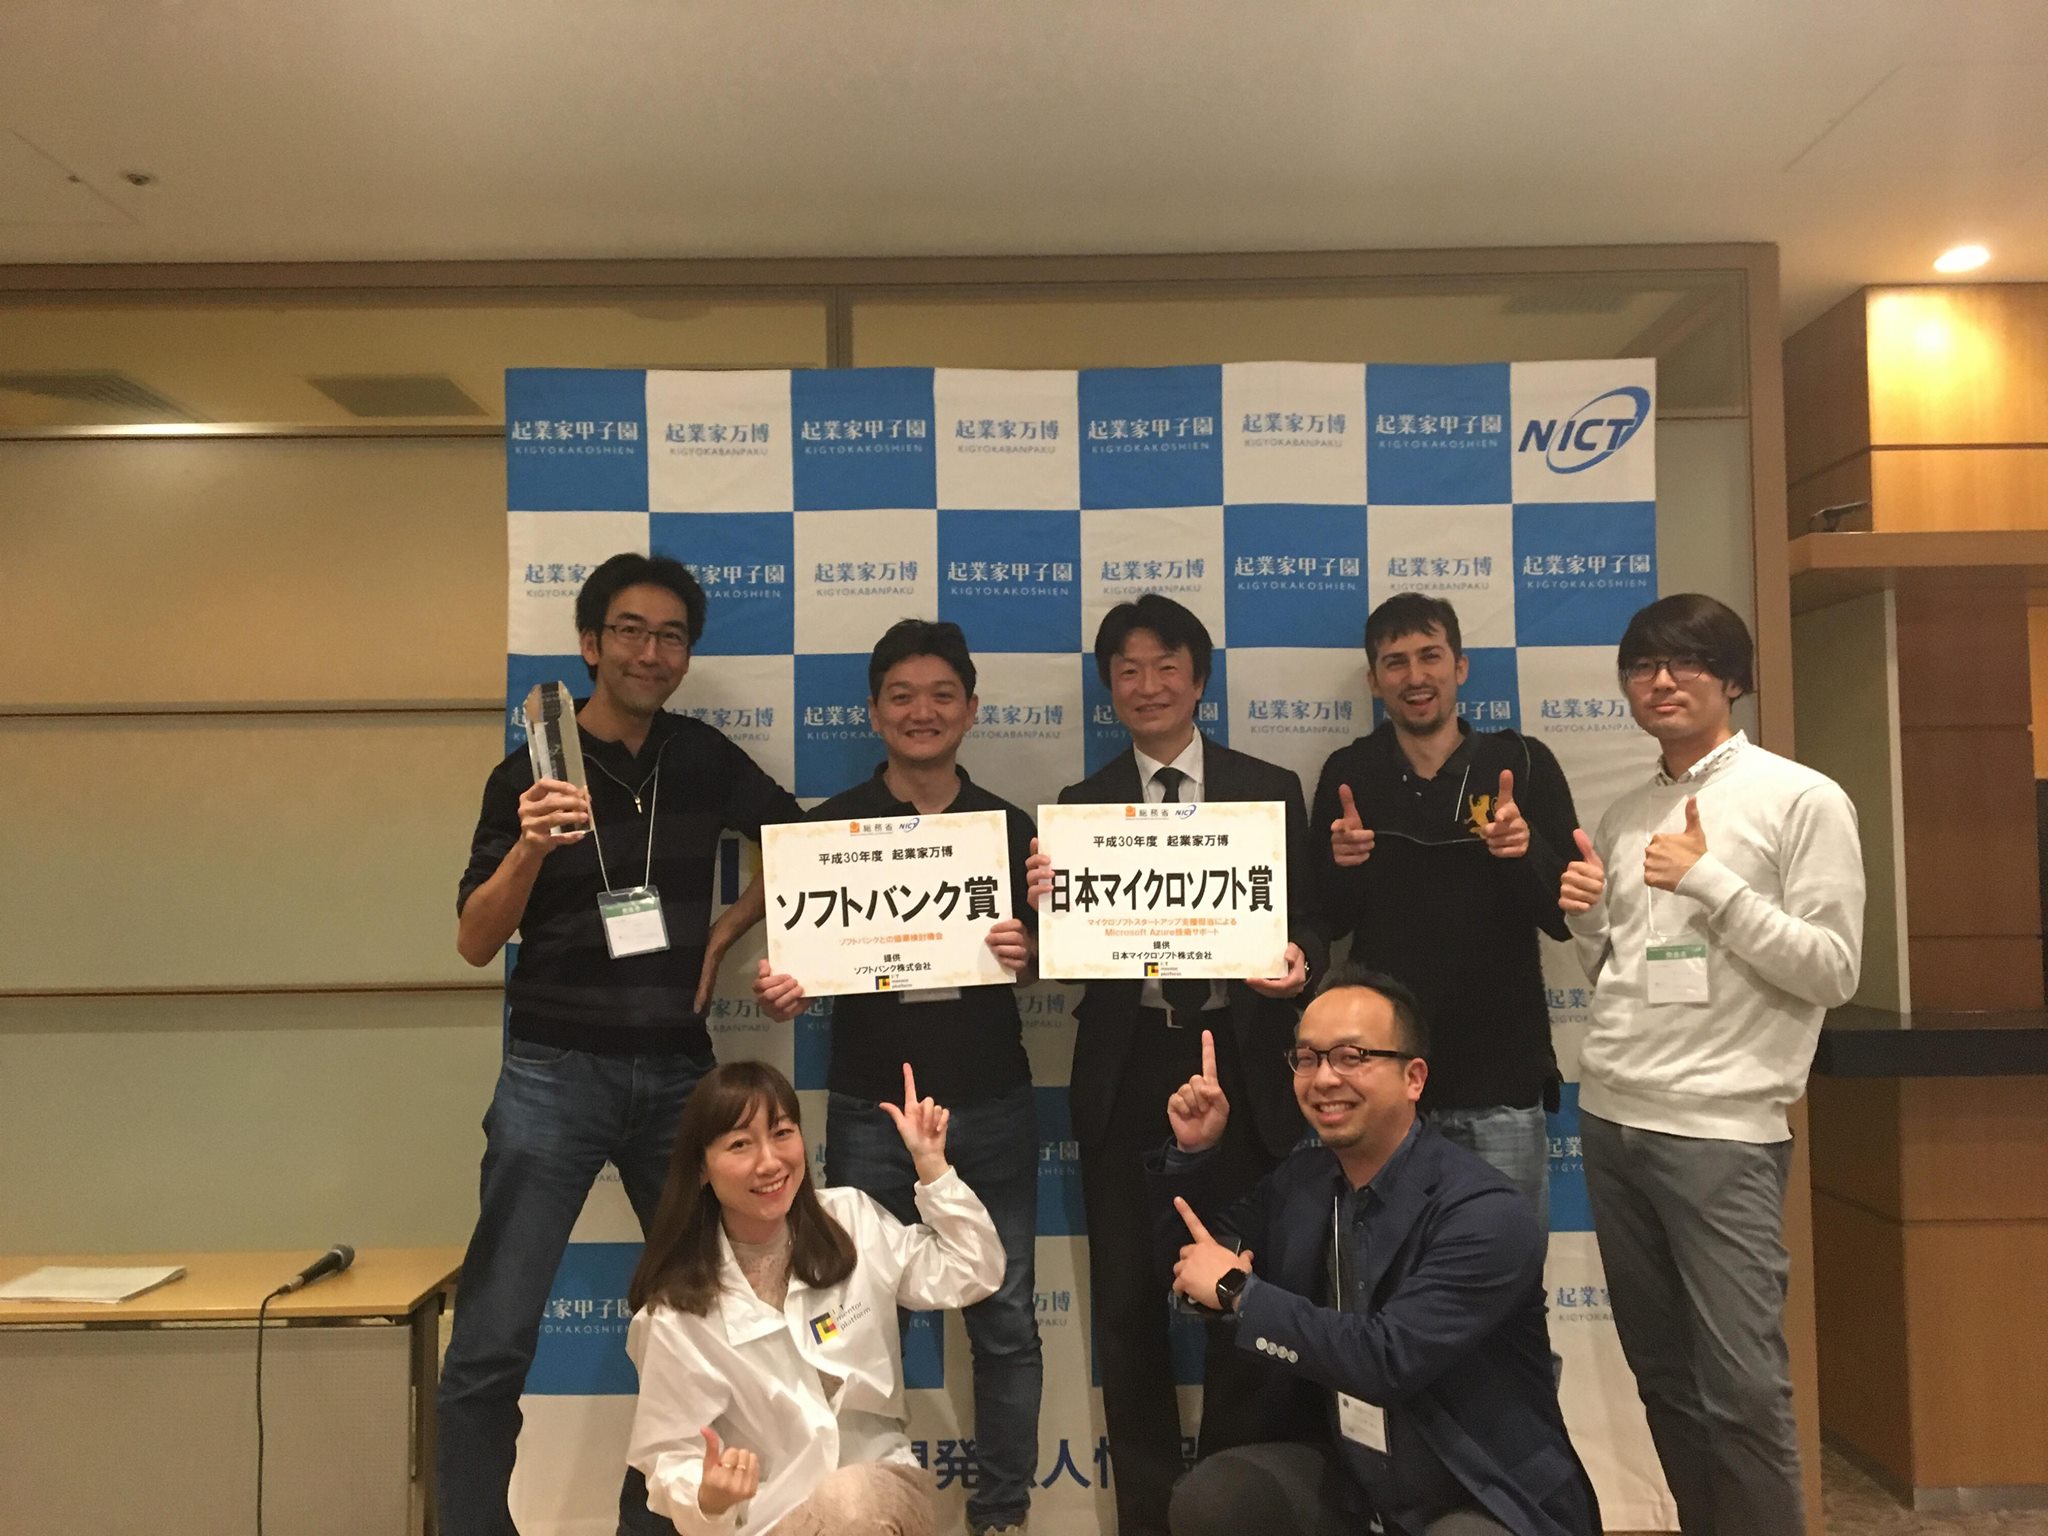 弊社が総務省&NICT主催の起業家万博にて日本マイクロソフト賞とソフトバンク賞を受賞いたしました